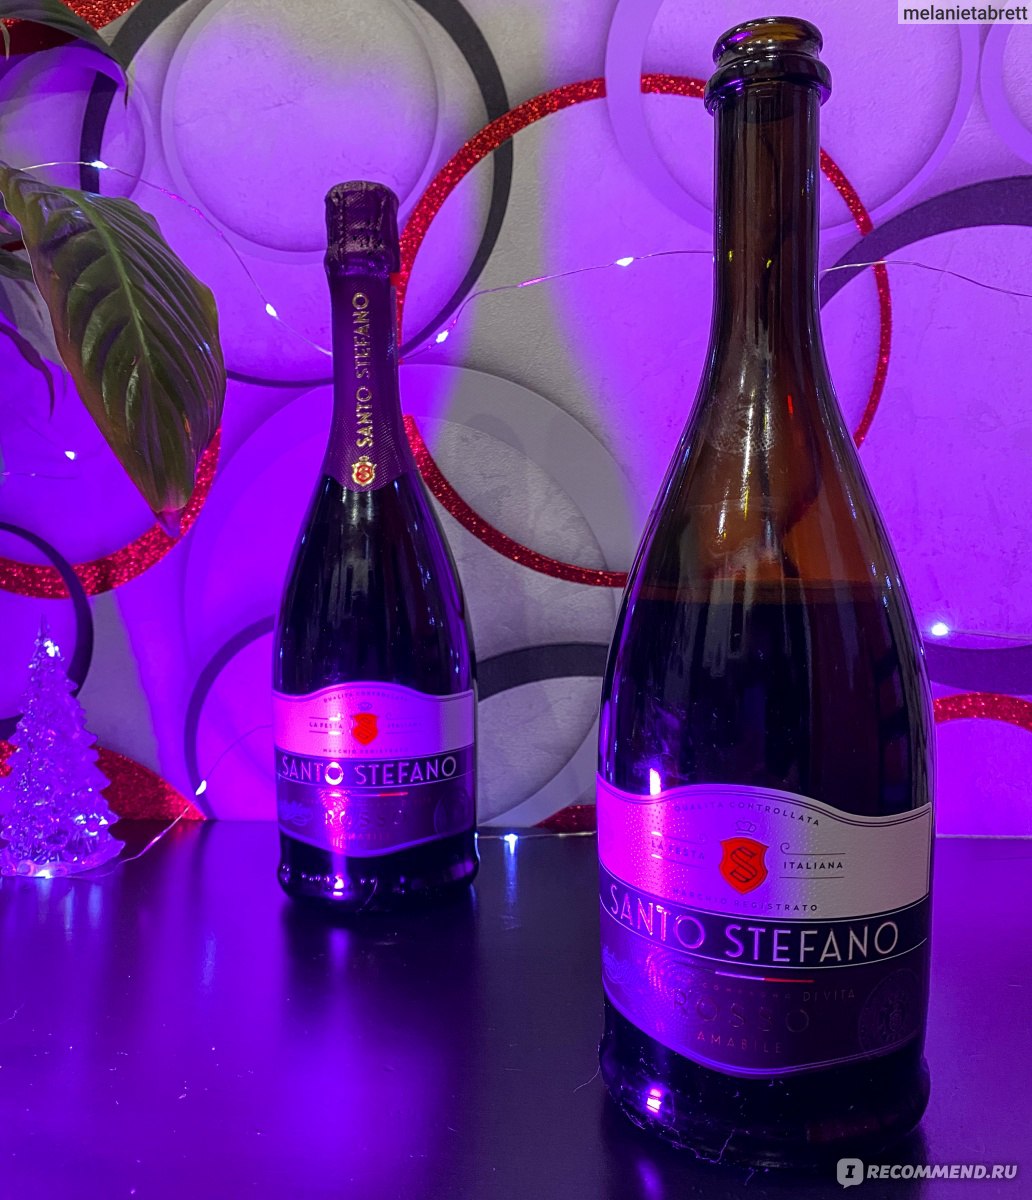 Санто стефано шампанское фиолетовое фото